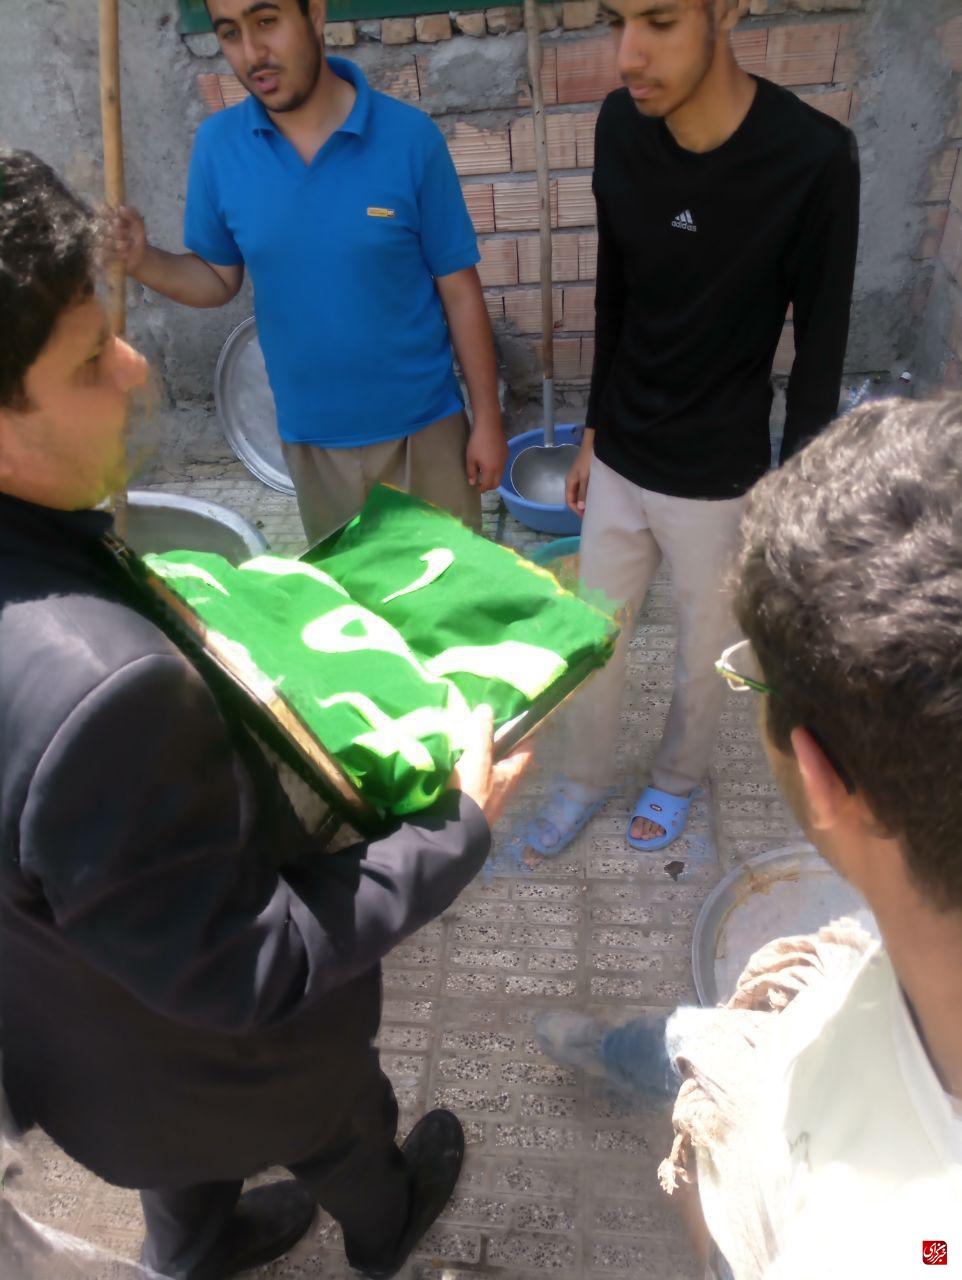 جهادگران دانشگاه فردوسی مشهد به پرچم حرم حضرت معصومه (س) متبرک شدند+تصاویر